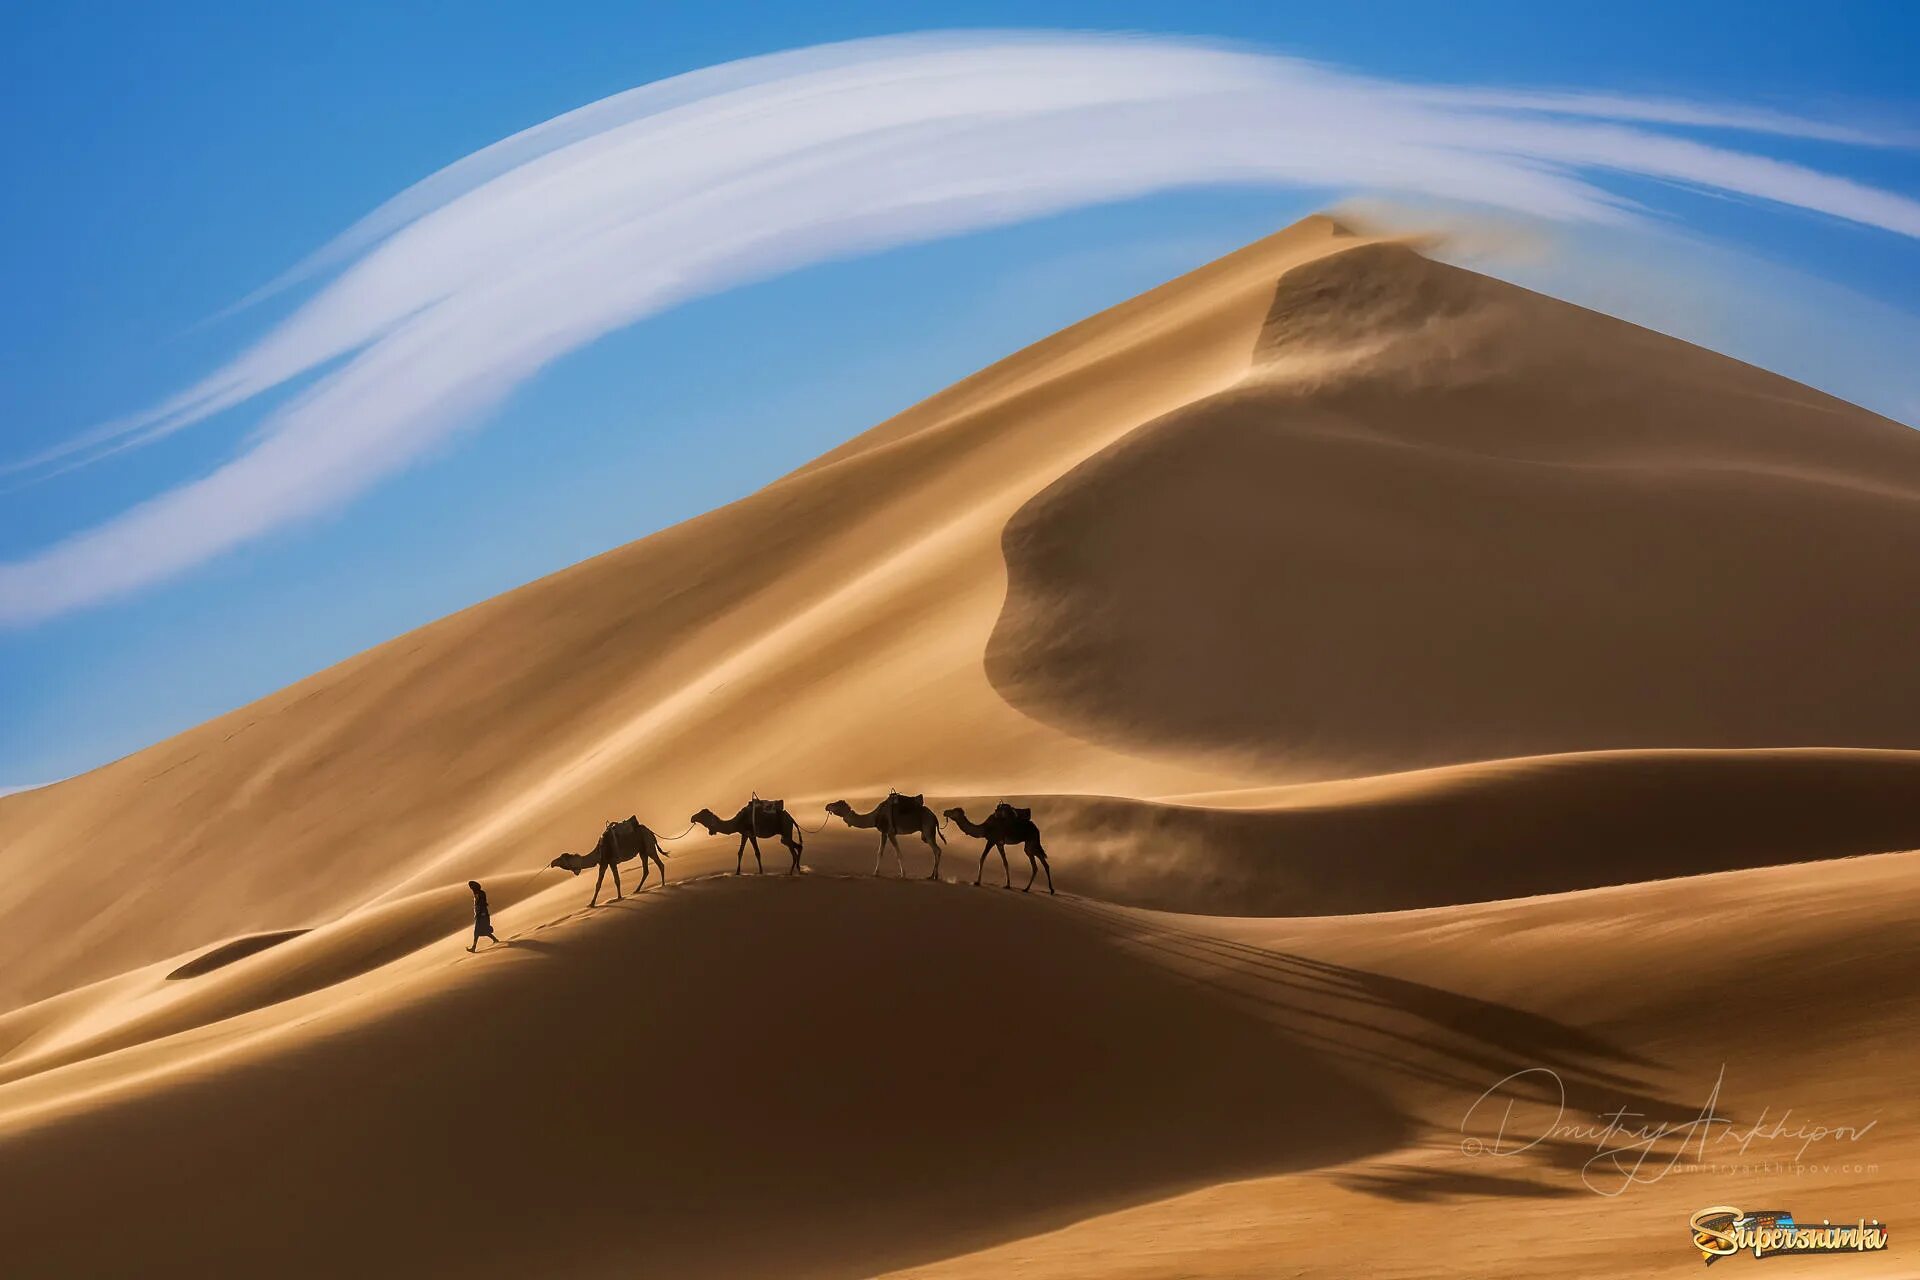 Фототур в Марокко. Пейзаж пустыни Кызылкум. Верблюд в пустыне. 100 караван